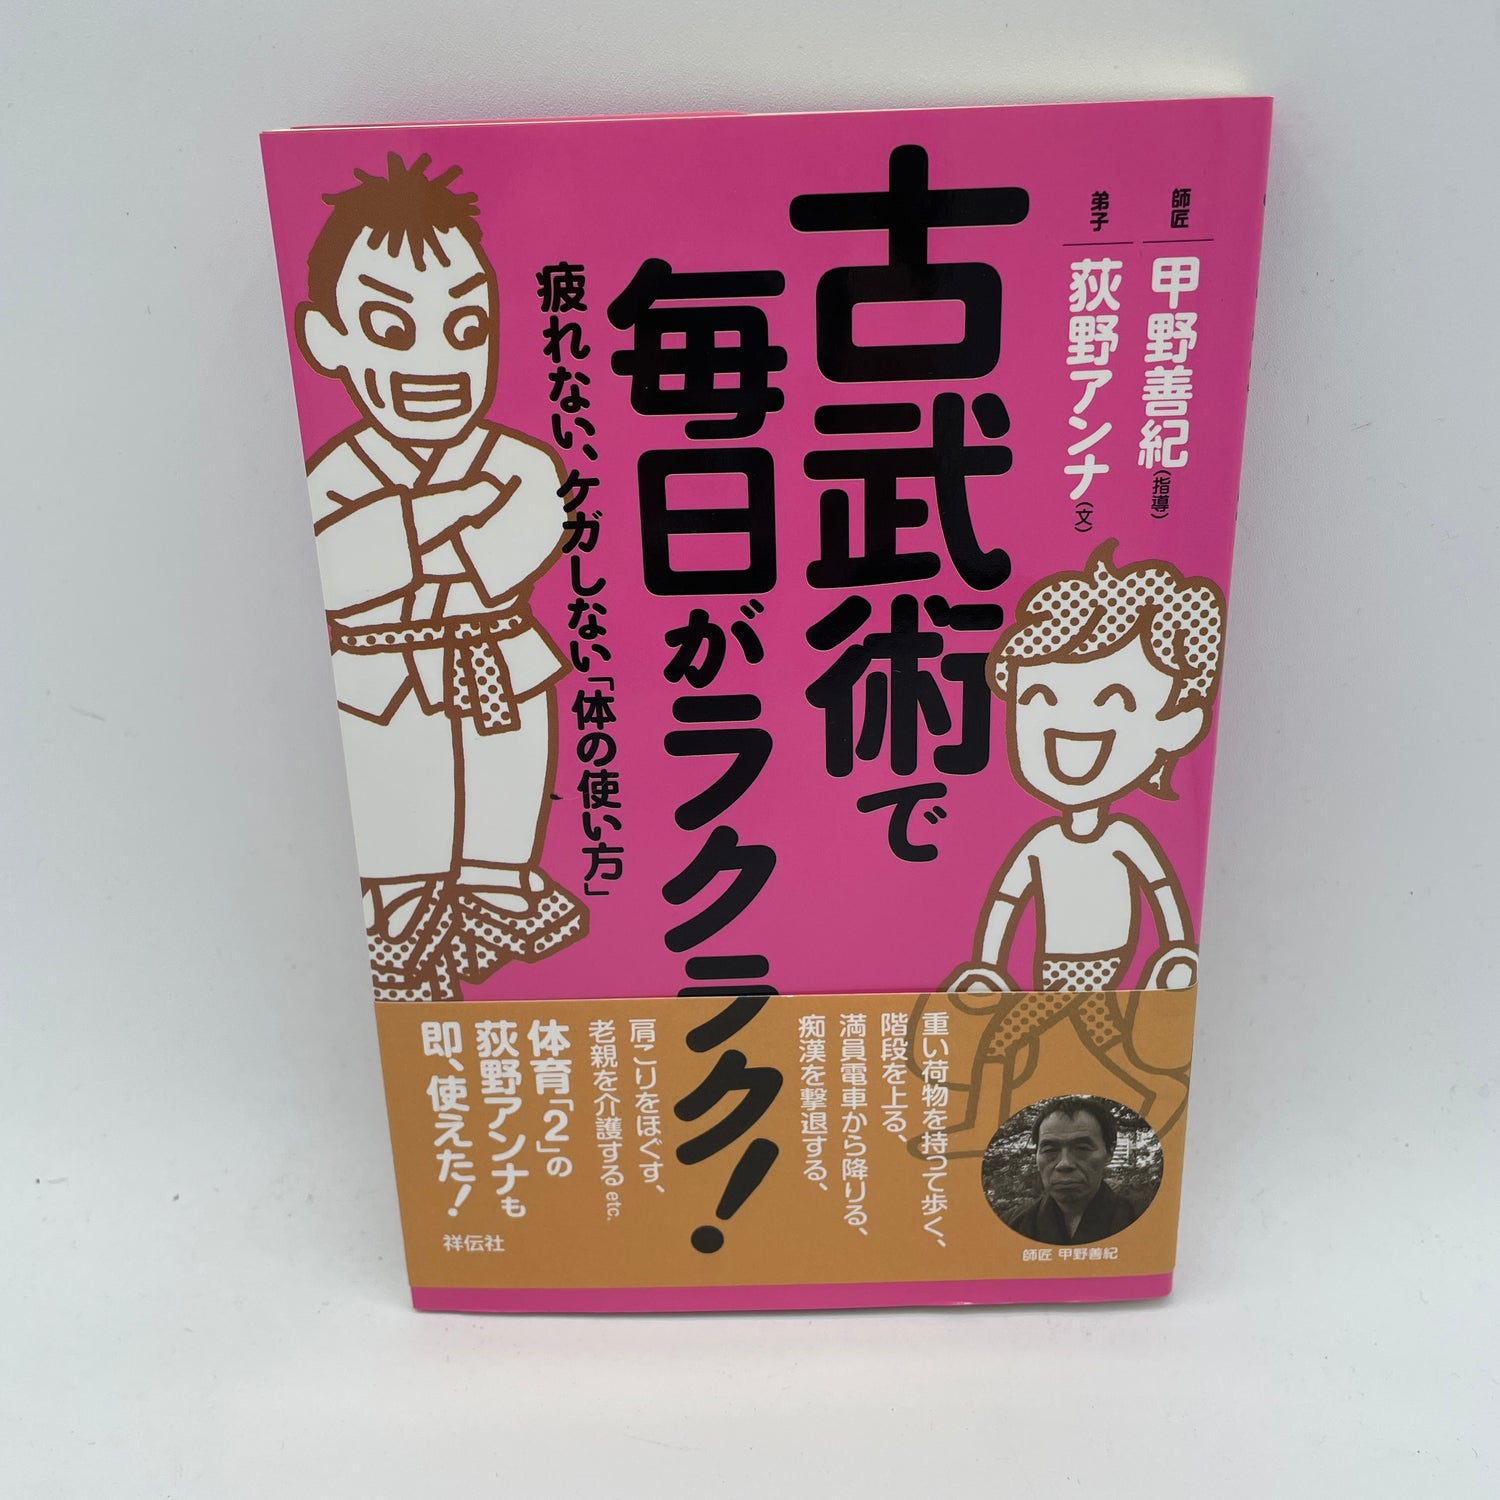 Libro sobre la vida cotidiana fácil a través del antiguo arte marcial de Yoshinori Kono (usado)